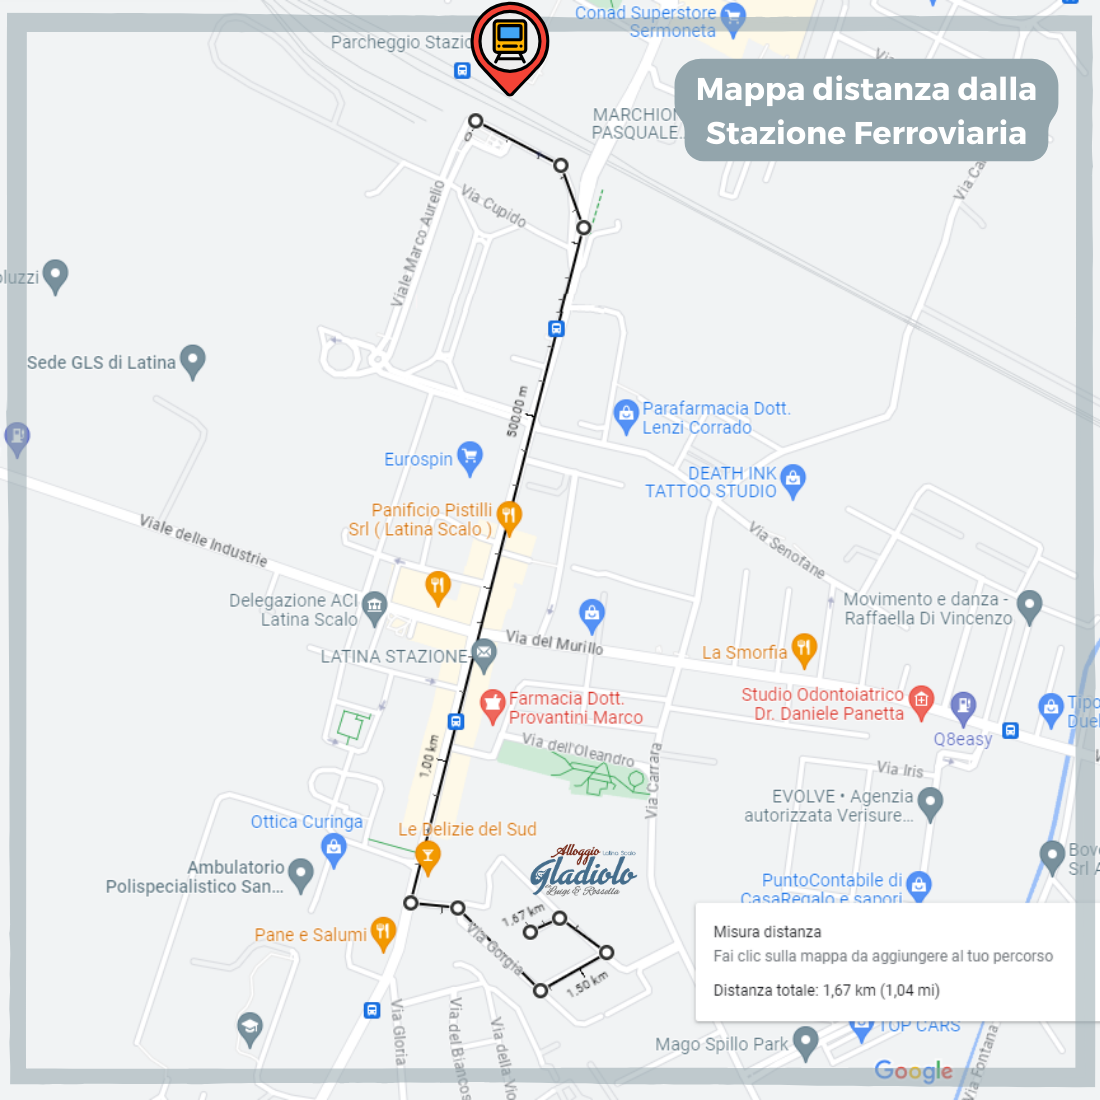 Alloggio Gladiolo - Latina Scalo - Mappa percorso da Stazione Ferroviaria - 1100px